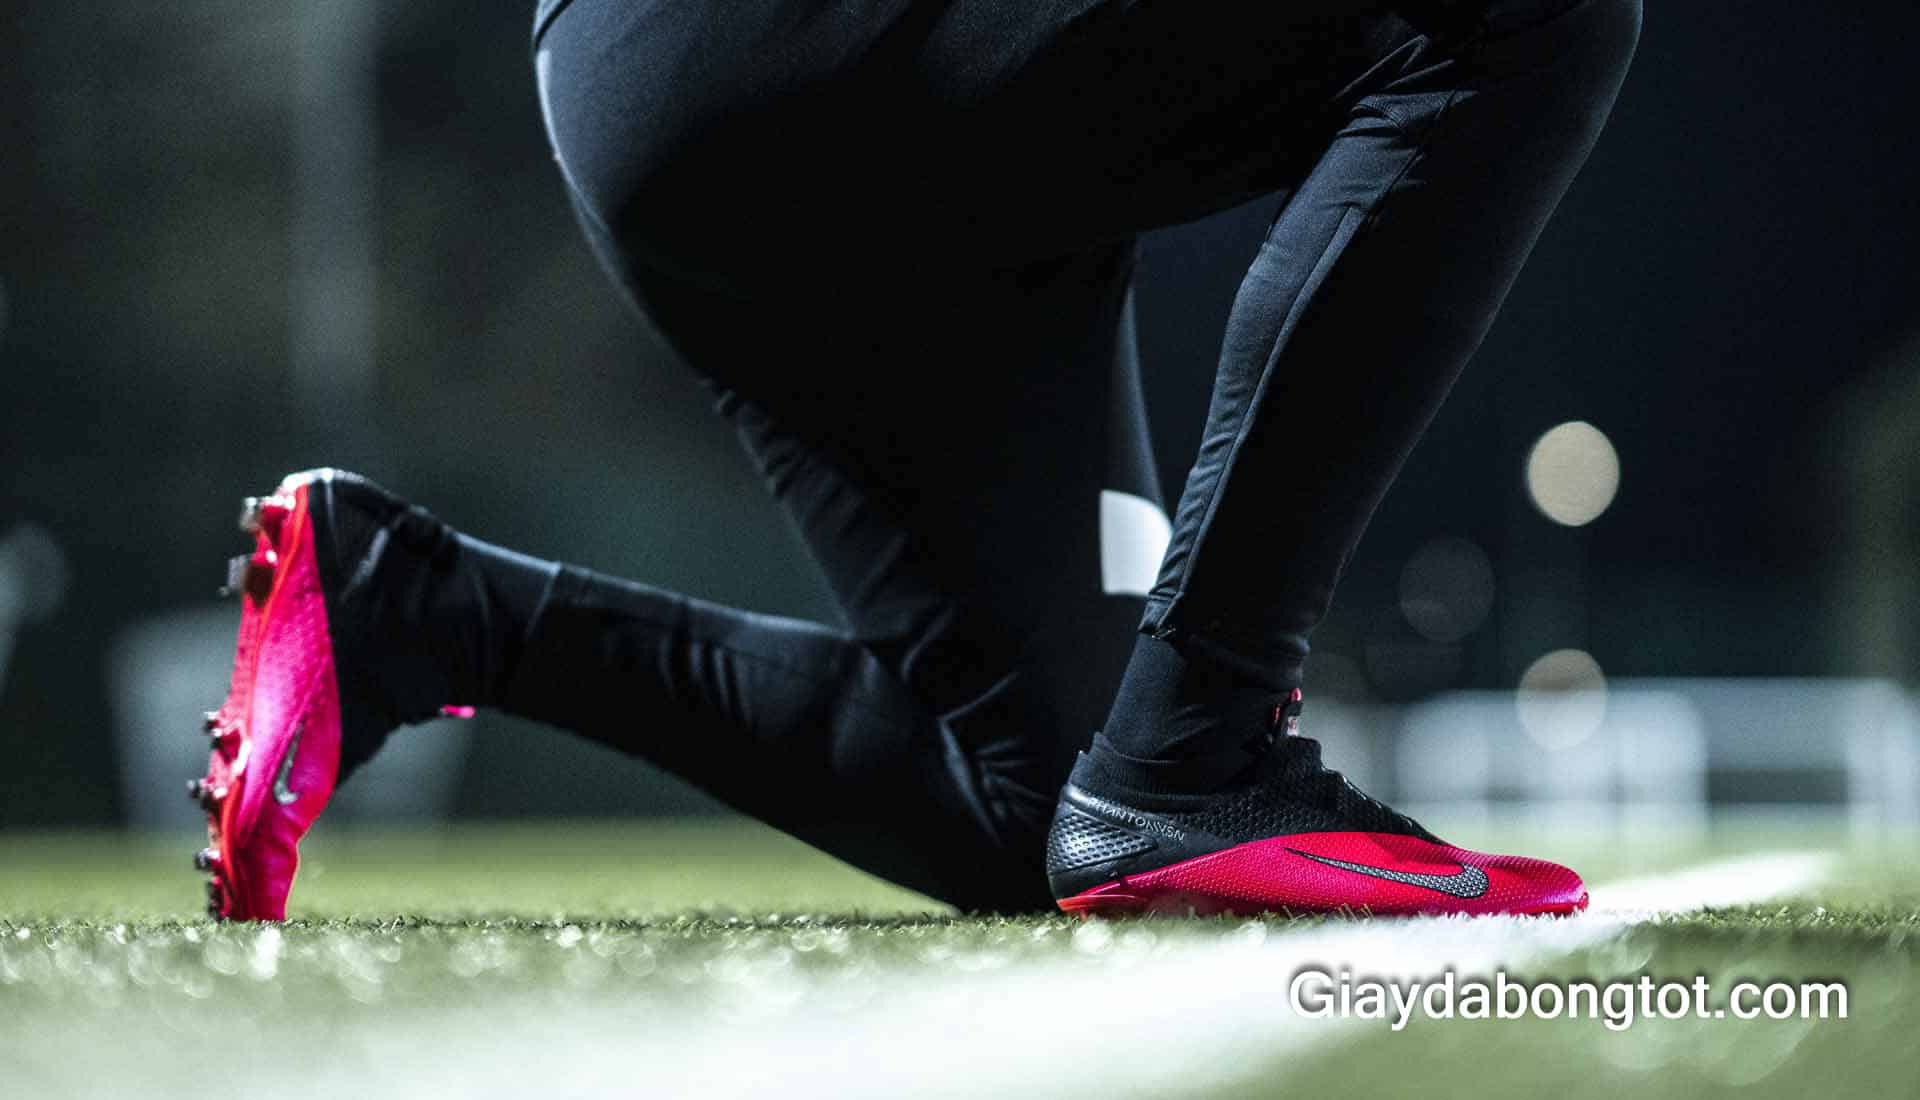 Trải nghiệm giày Nike Phantom VSN thế hệ mới trên sân cỏ nhân tạo